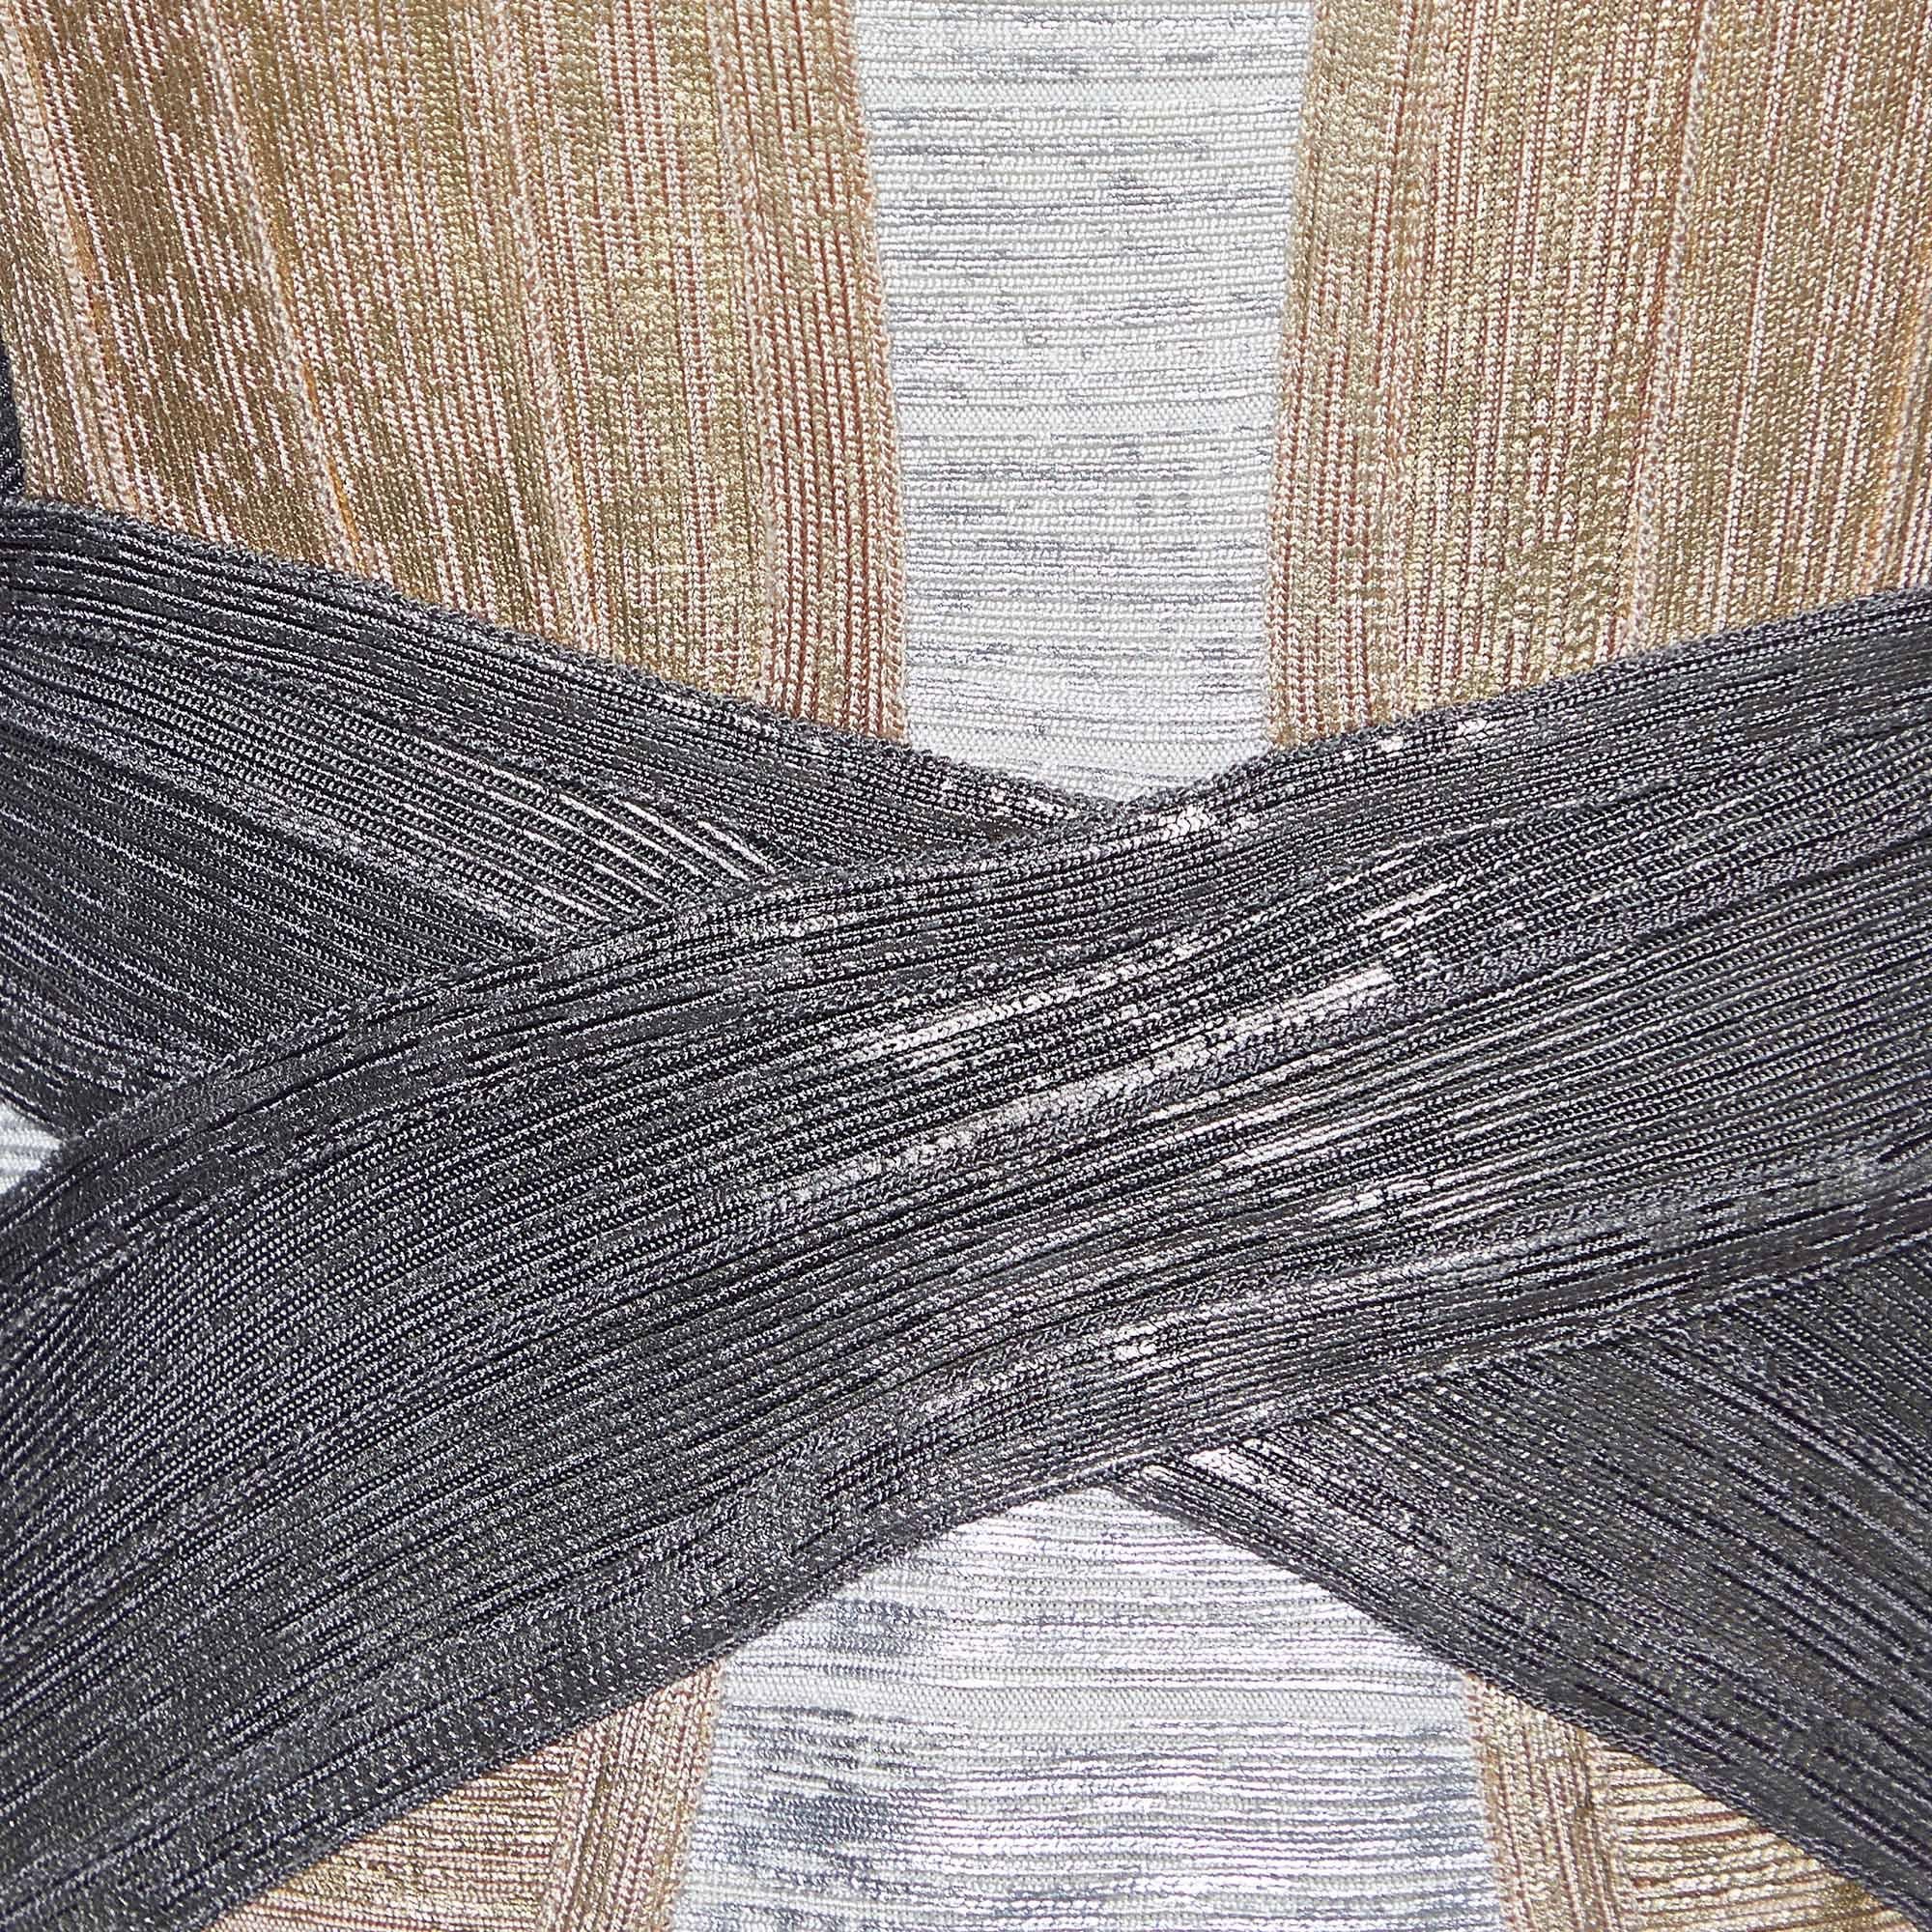 Herve Leger Metallic Foil Print Knit Carolyn Bandage Dress M In Excellent Condition For Sale In Dubai, Al Qouz 2